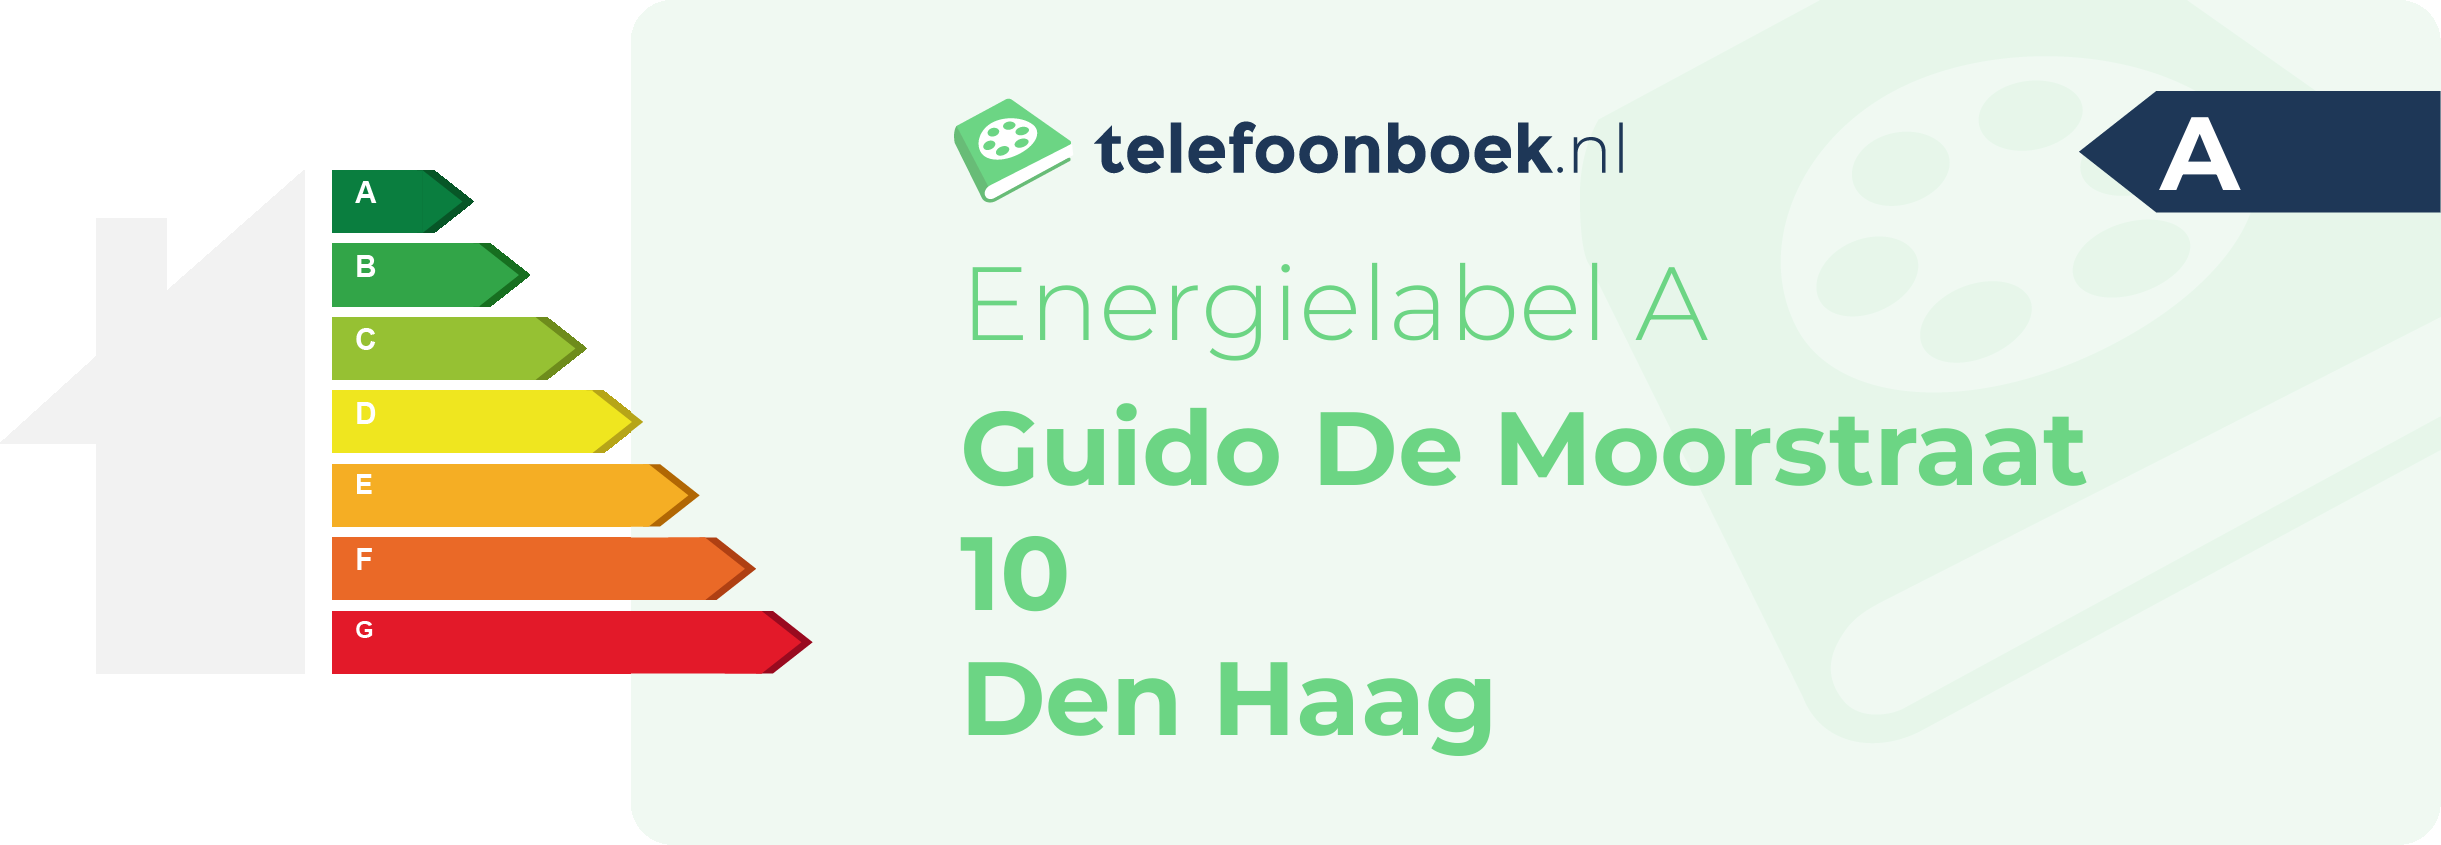 Energielabel Guido De Moorstraat 10 Den Haag